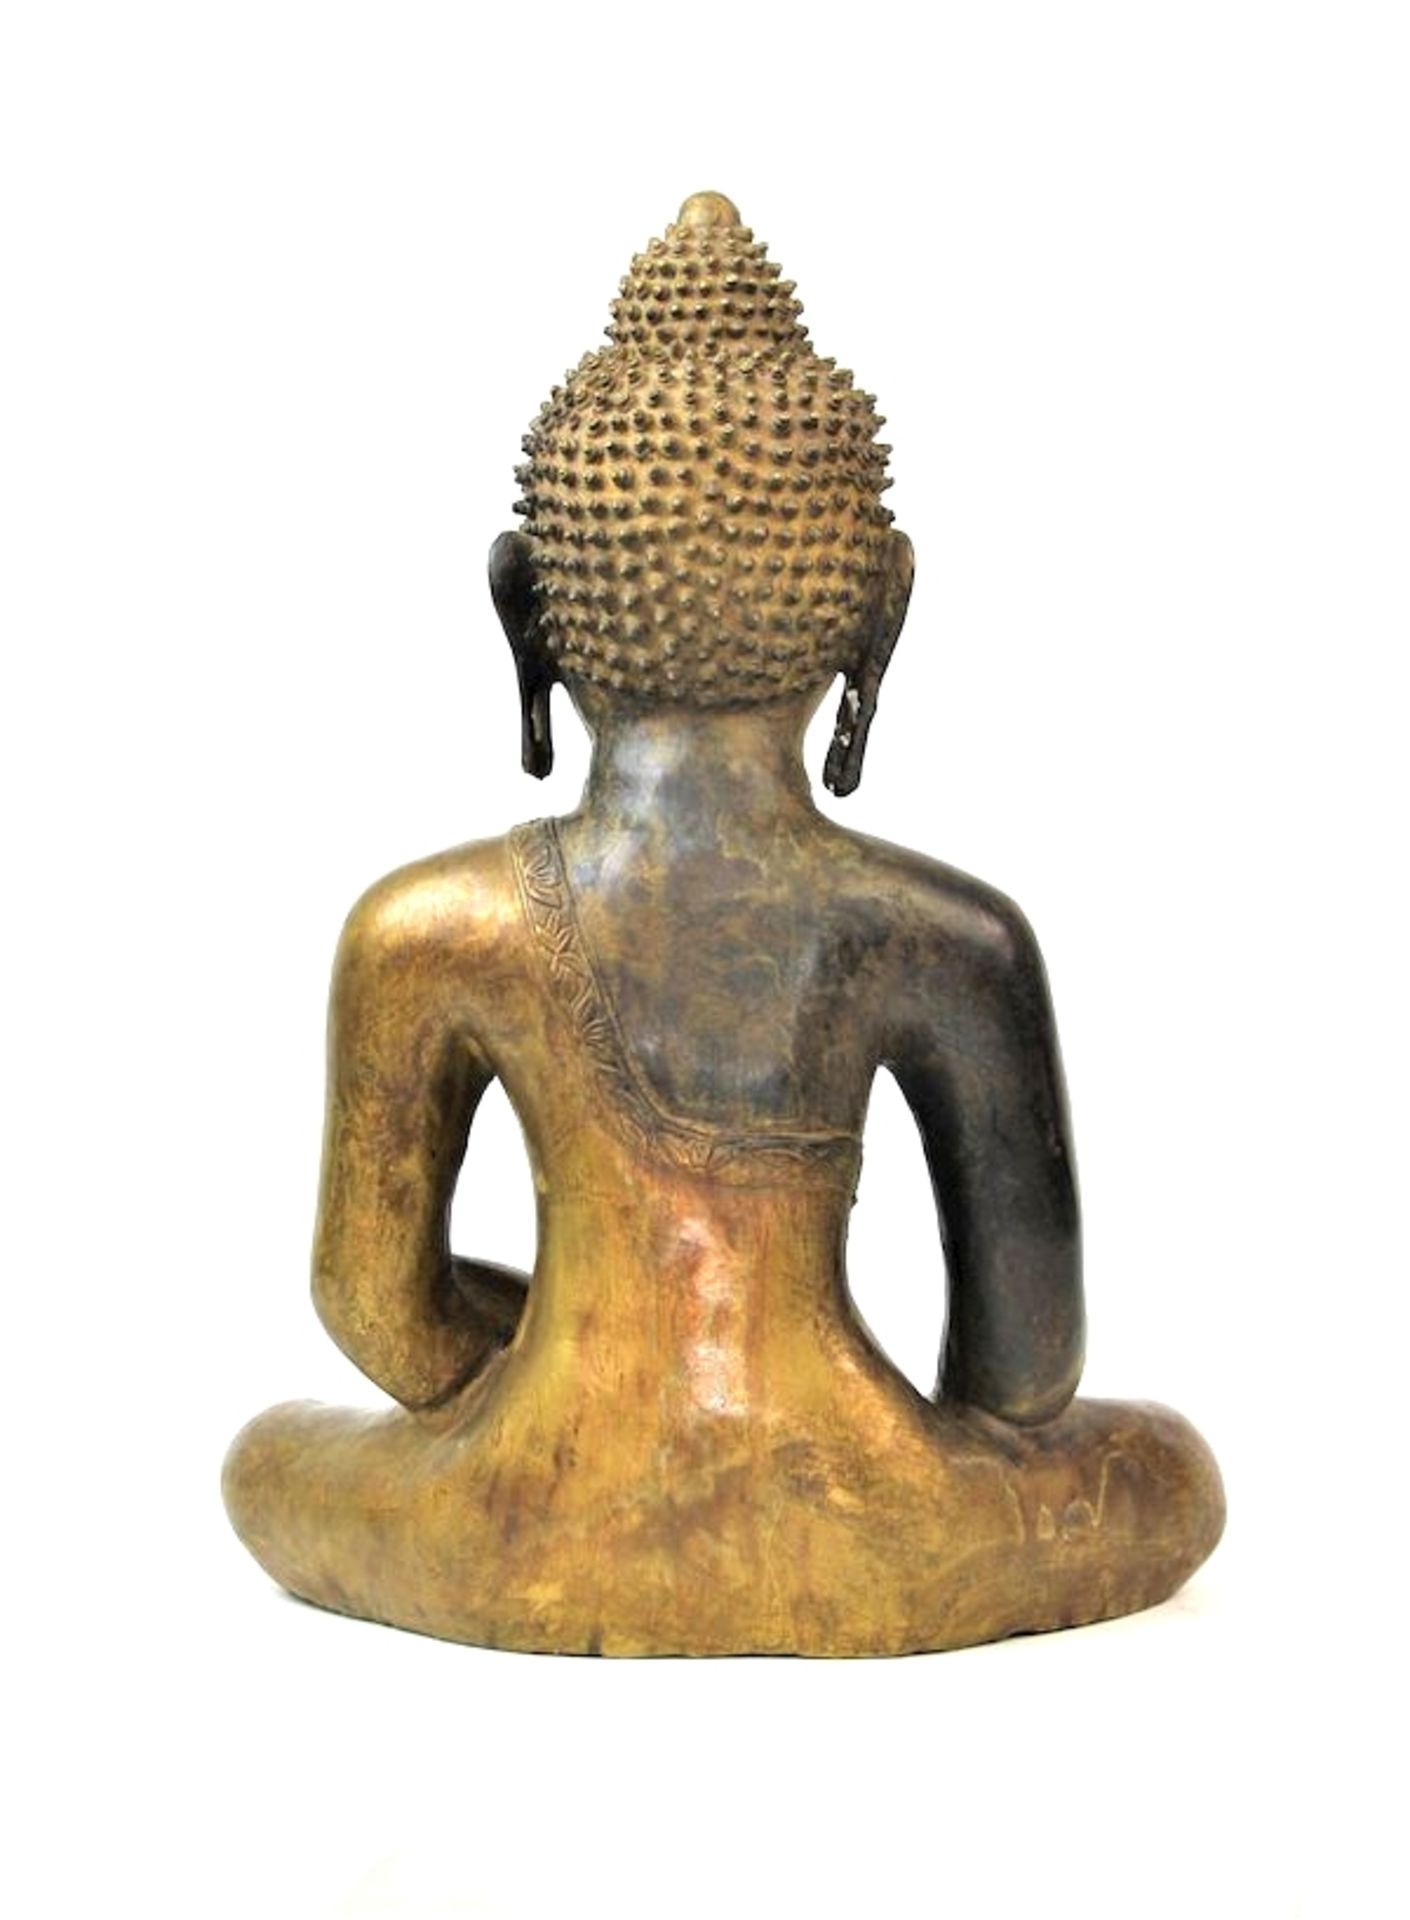 Großer Buddha Shakyamuni, Tibet wohl 16.Jhdt.Bronze, partiell feuervergoldet Boden neuzeitlich - Bild 5 aus 6